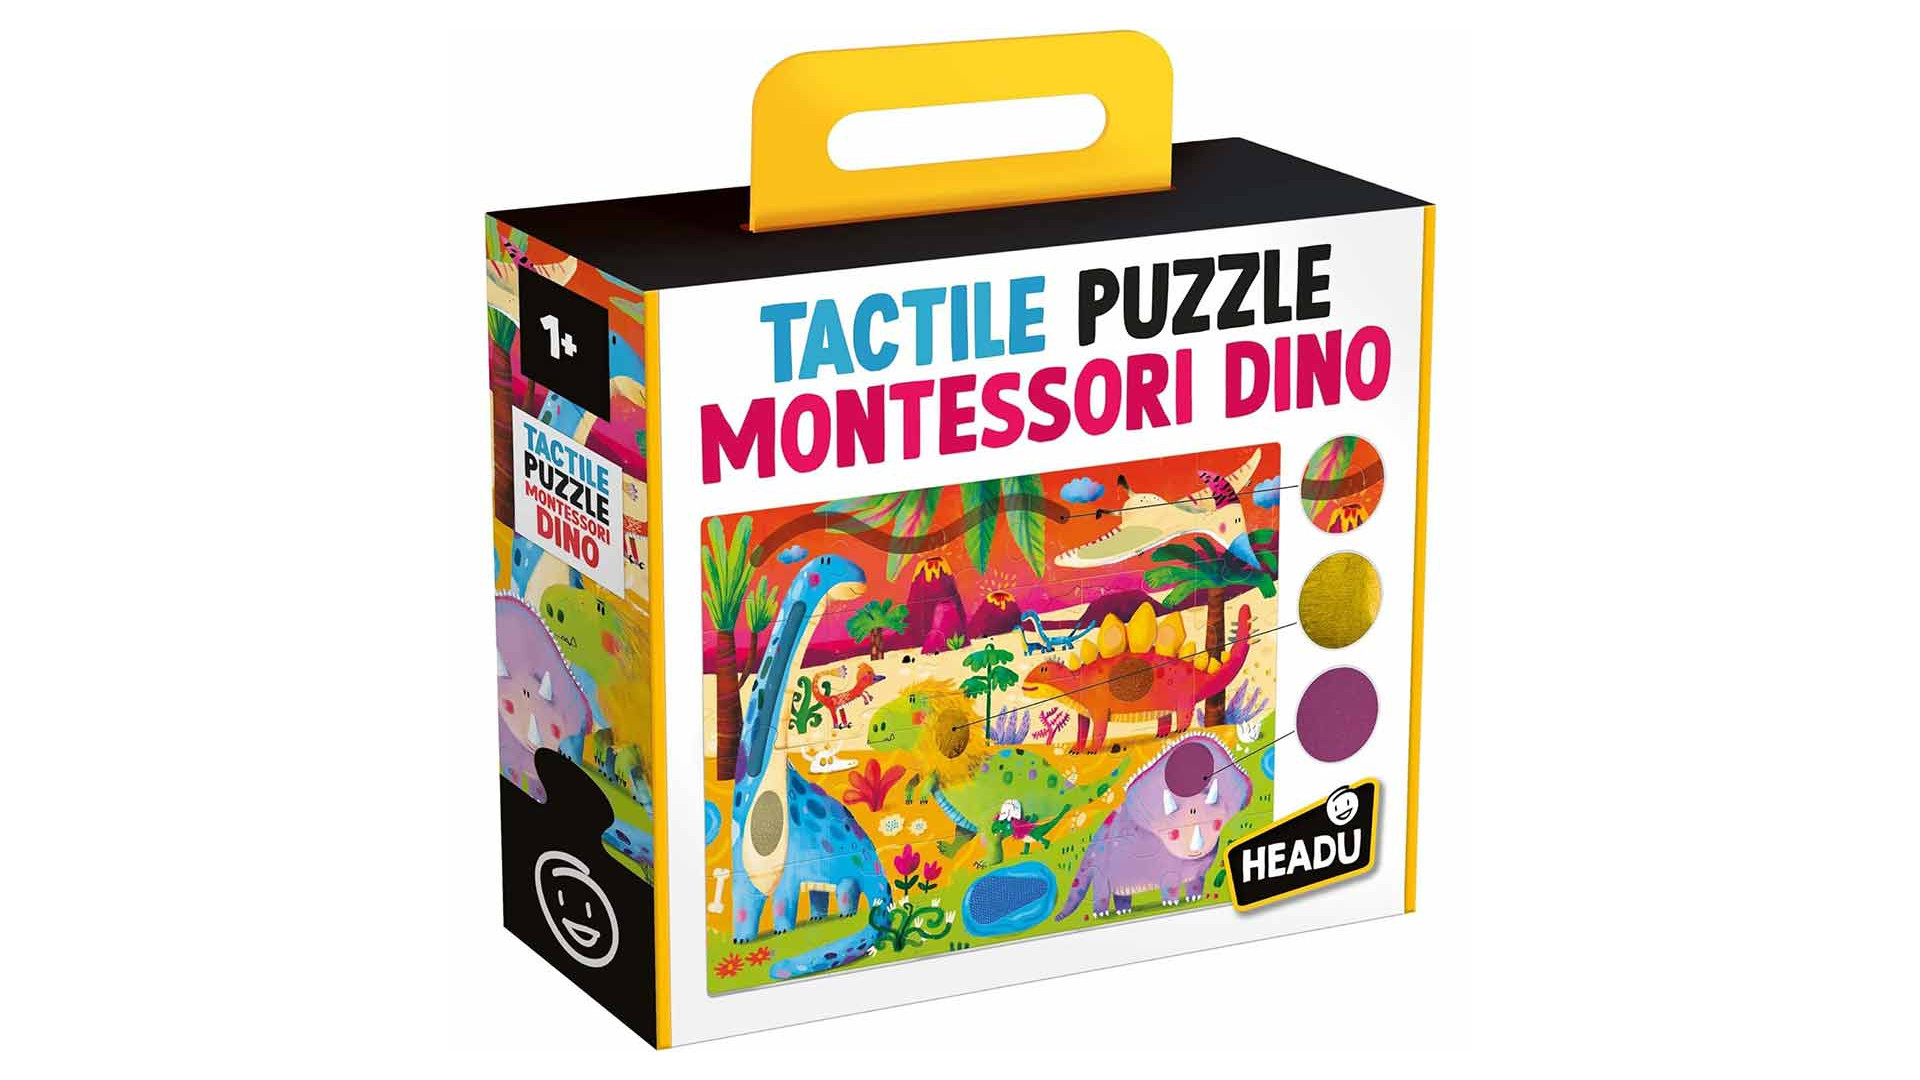 Acheter Tactile Puzzle Montessori Dino